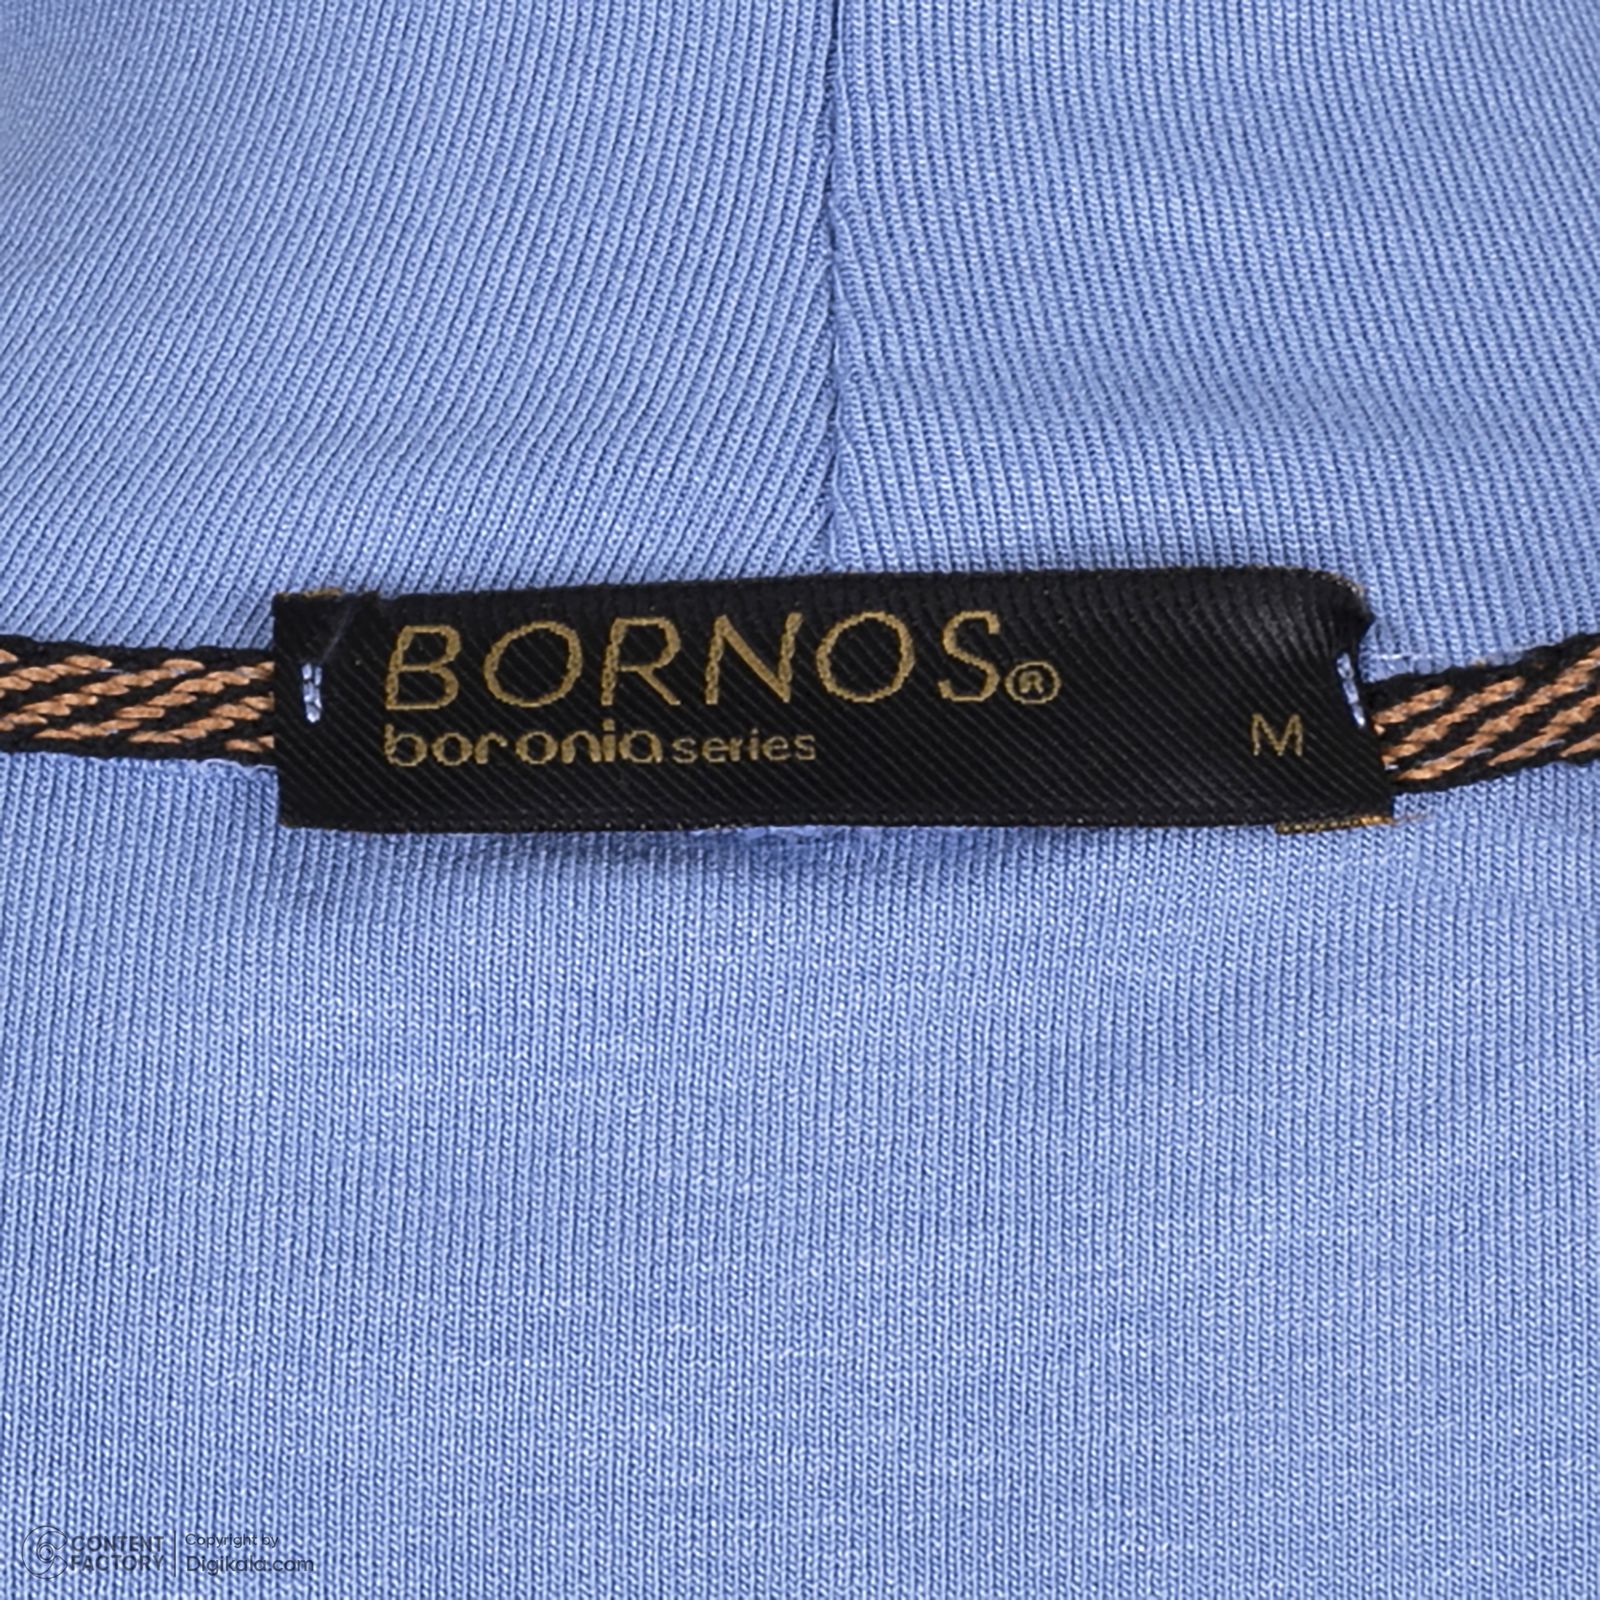 تی شرت آستین کوتاه زنانه برنس مدل باربارا-50 رنگ آبی روشن -  - 3